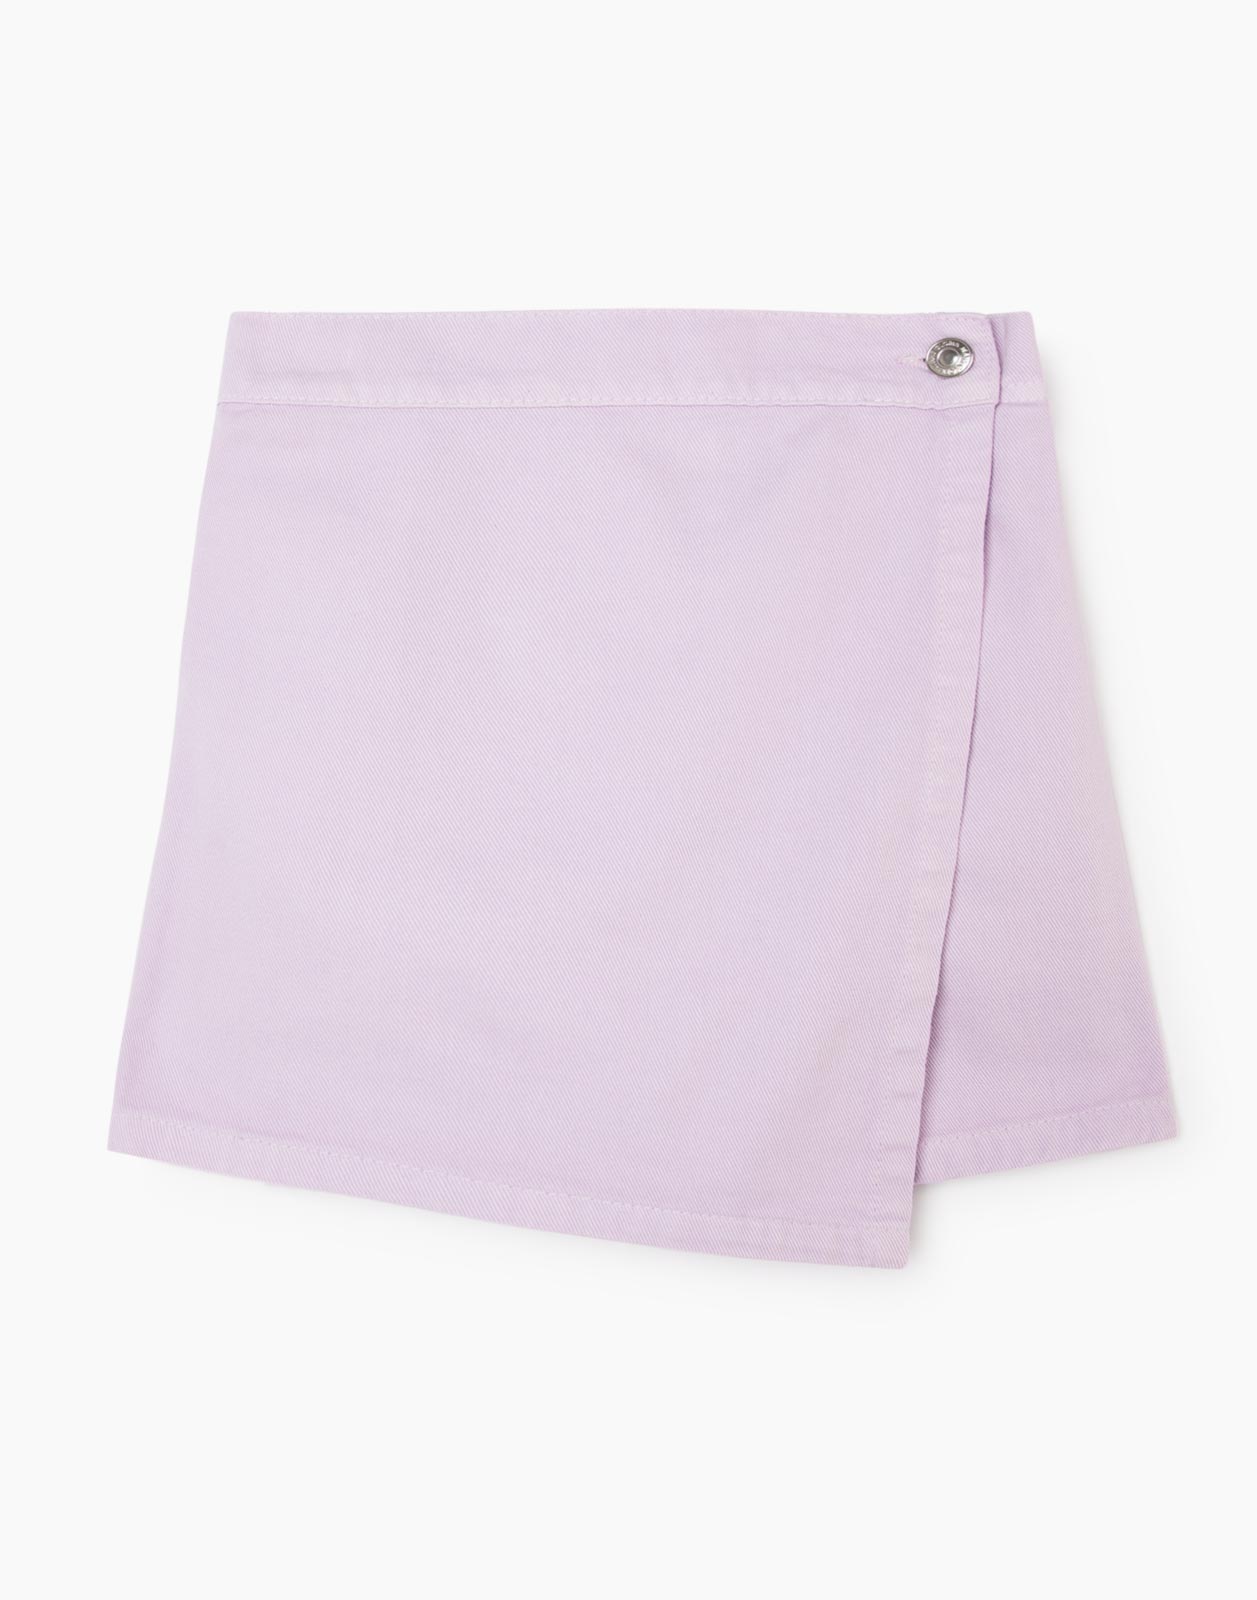 Сиреневая джинсовая юбка-шорты для девочки р.158-164